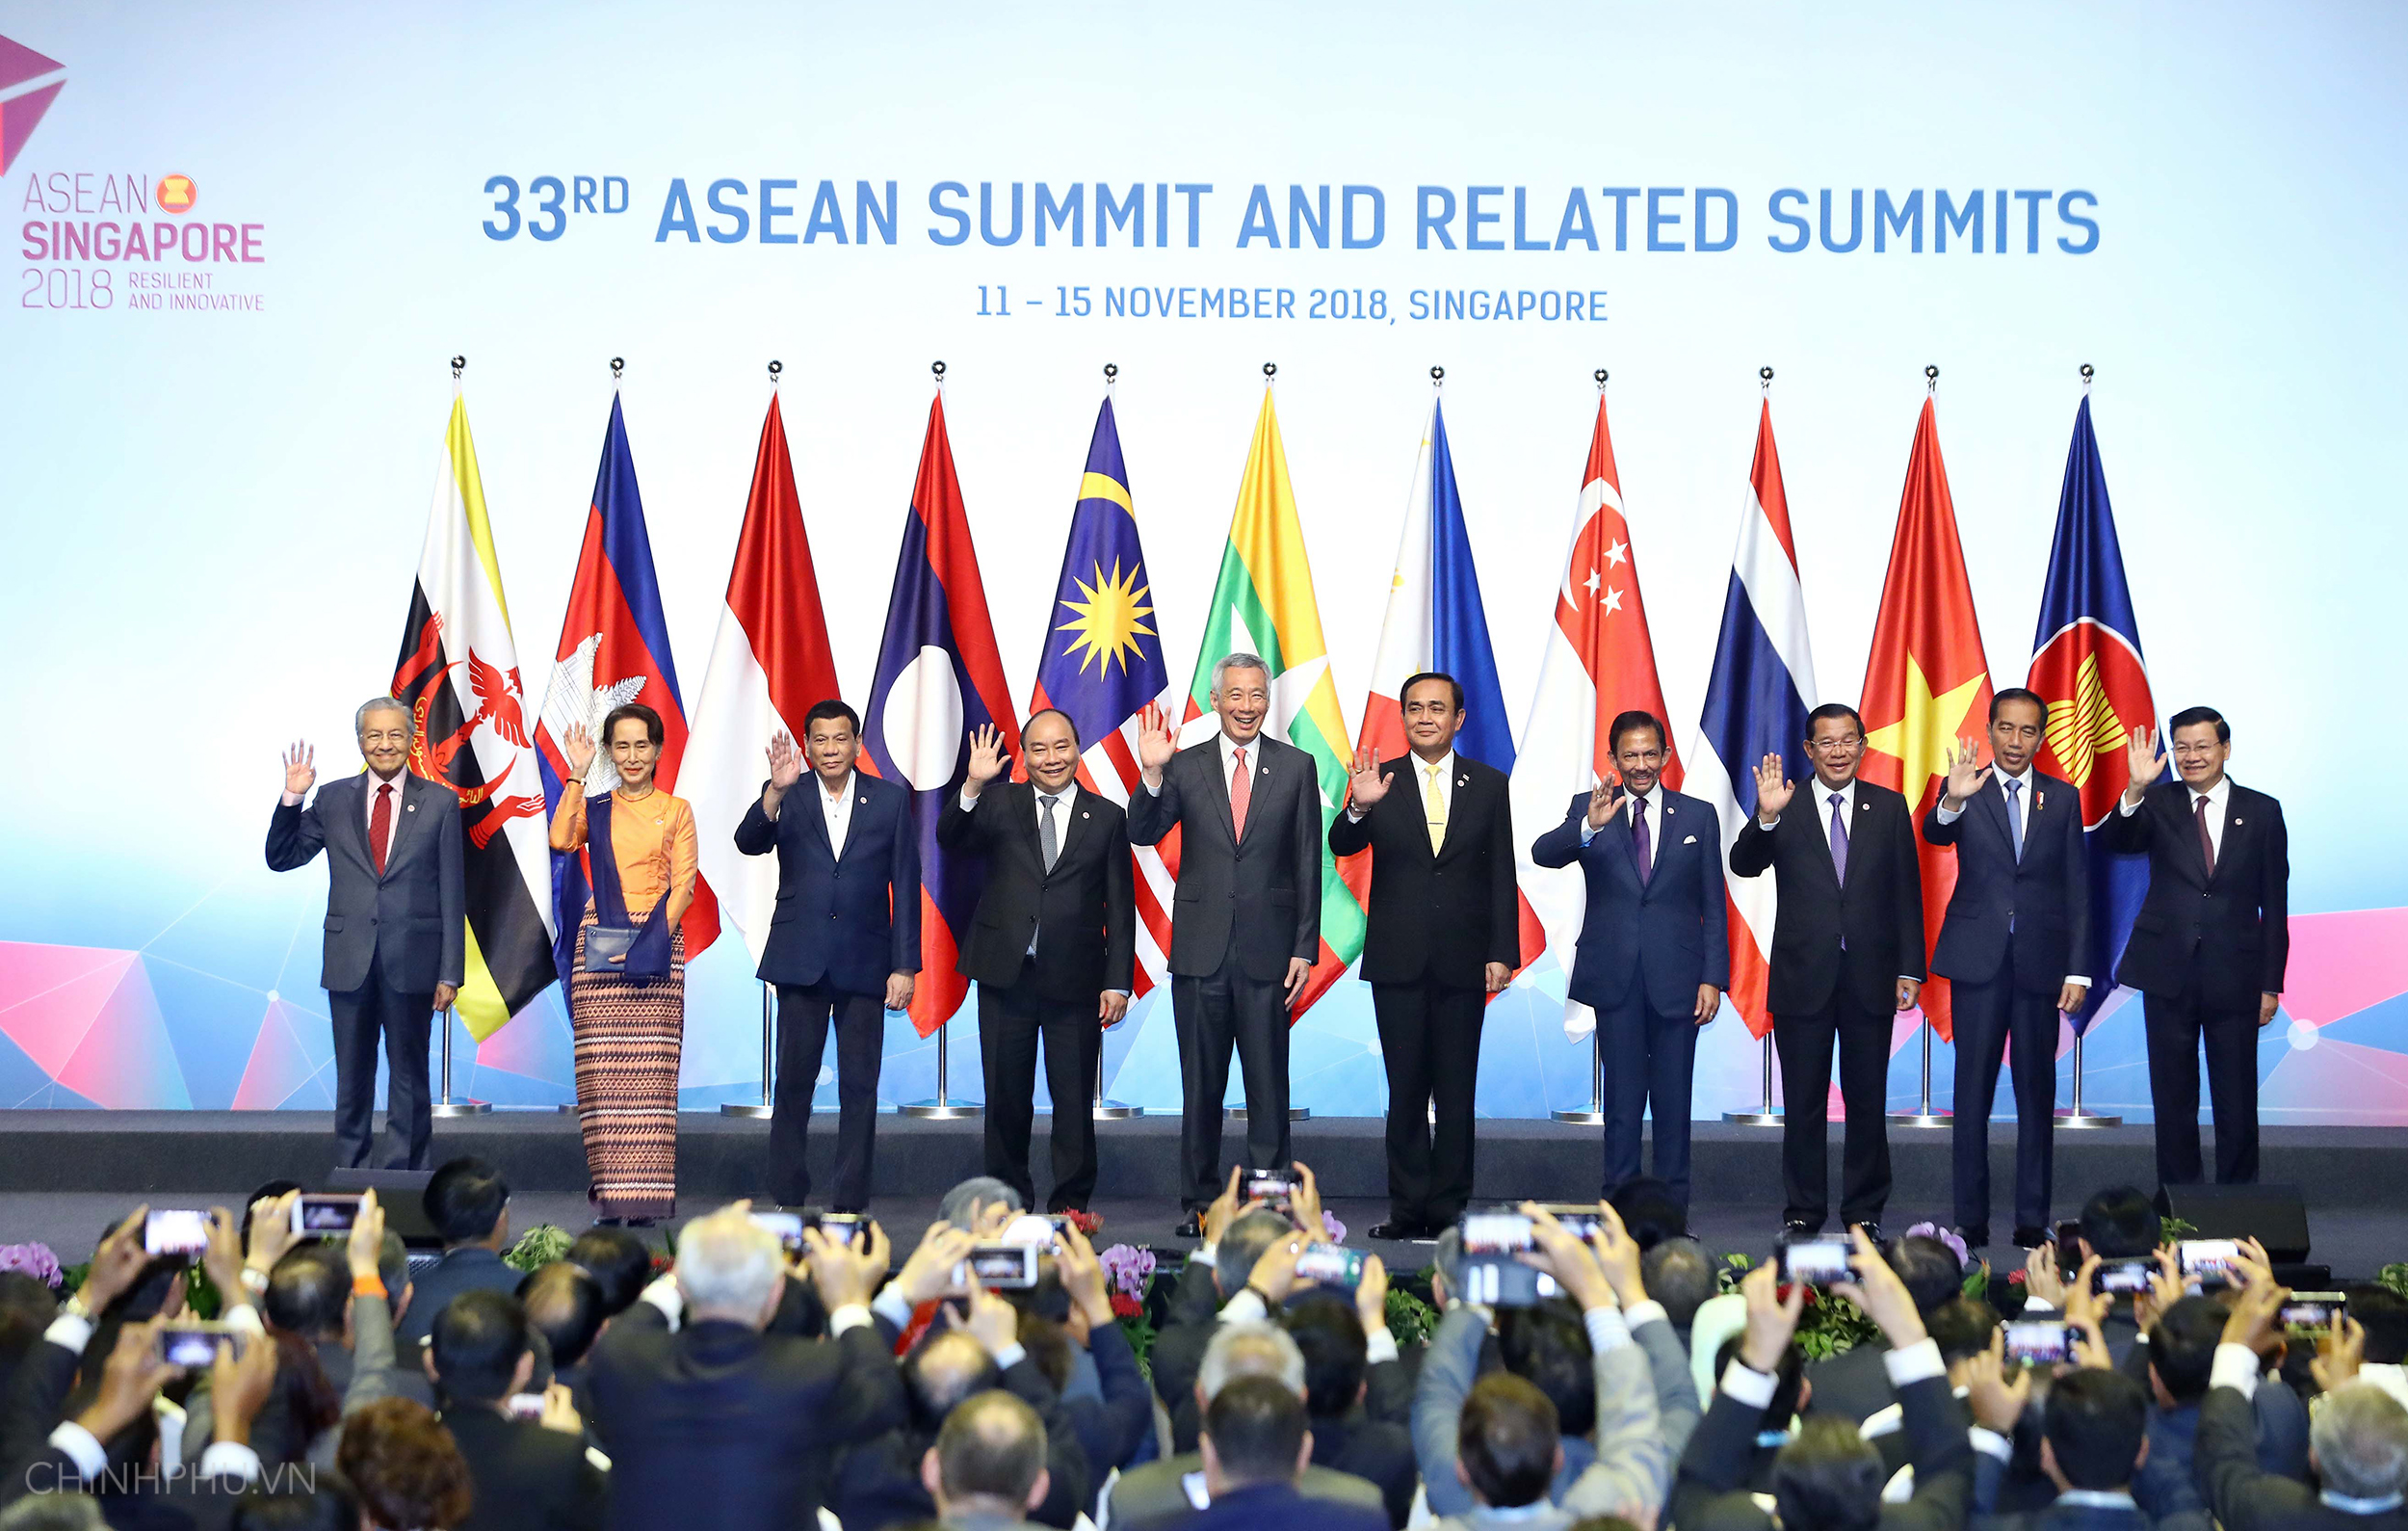 Hợp tác ASEAN: ASEAN là một trong những cộng đồng kinh tế phát triển nhất thế giới. Năm 2024, Hợp tác ASEAN đã đạt được nhiều thành tựu vượt bậc và đem lại nhiều lợi ích cho các quốc gia thành viên như Việt Nam. Sự phát triển của khu vực này đã tạo điều kiện thuận lợi cho việc hợp tác thương mại, du lịch, giáo dục và văn hóa giữa các quốc gia.